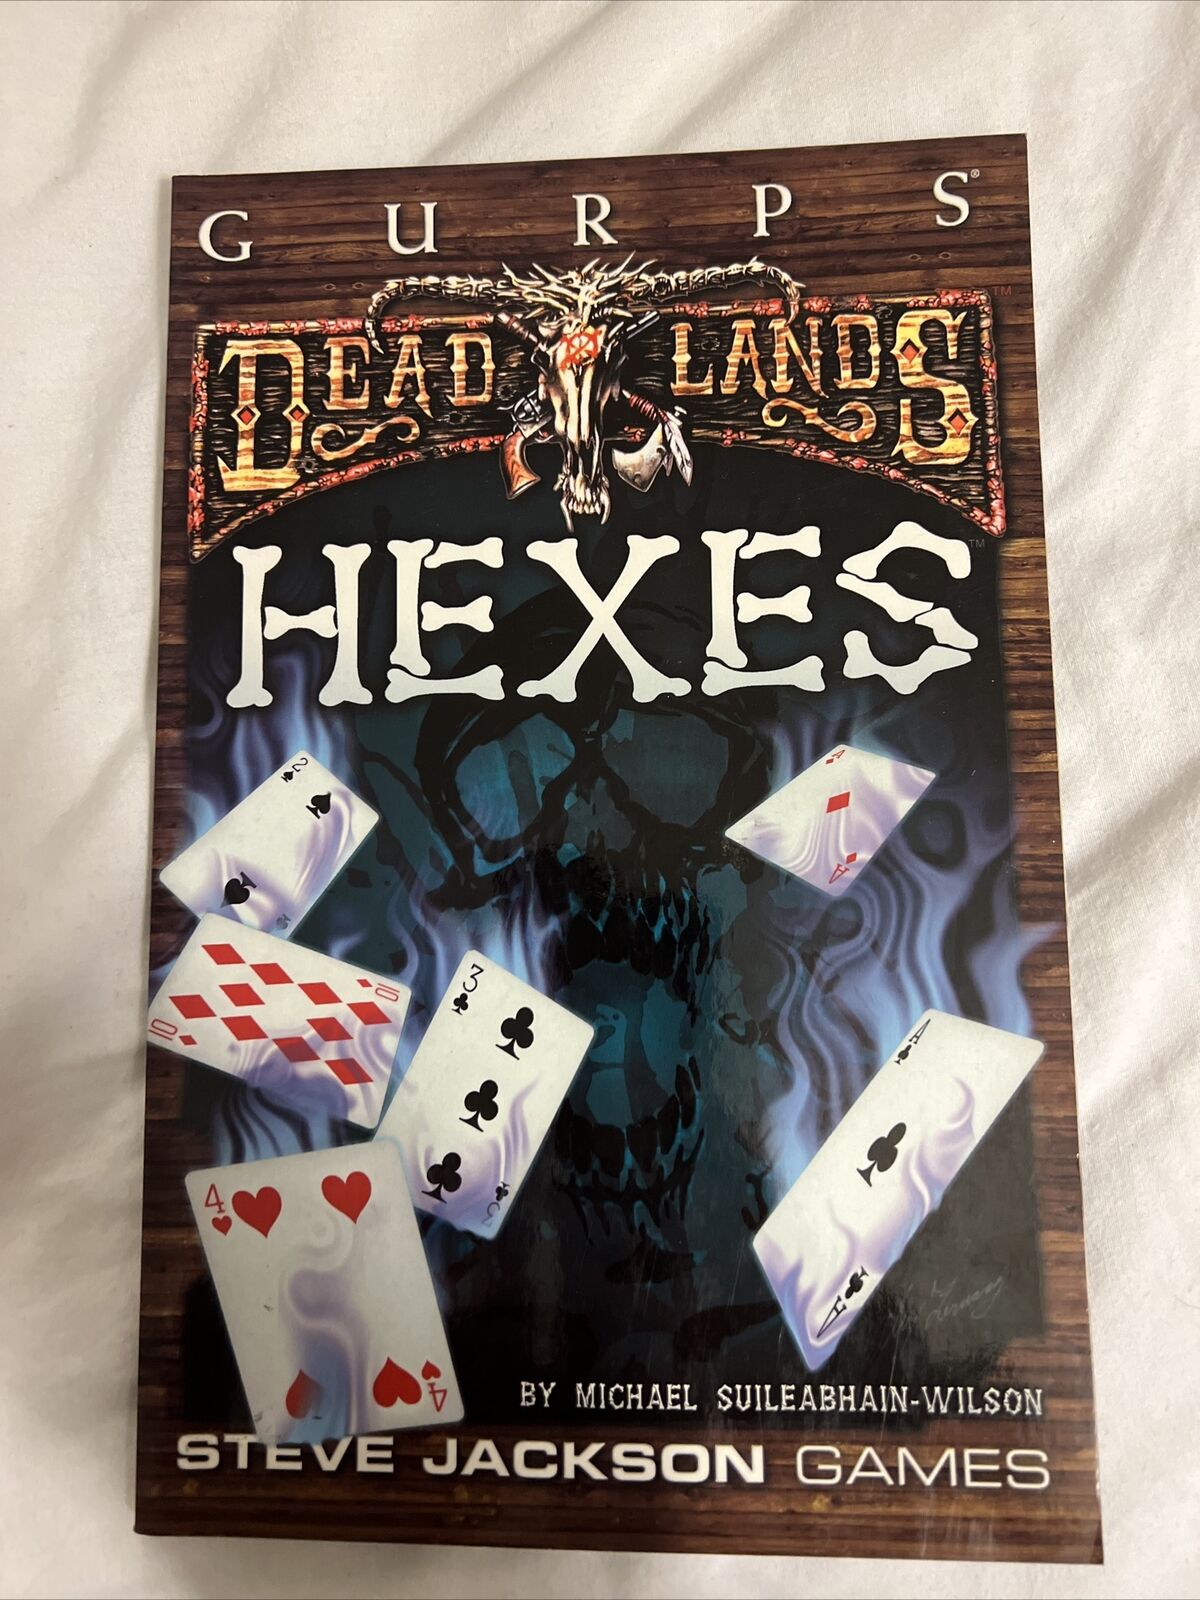 GURPS Deadlands: Hexes (paperback sourcebook, Steve Jackson Games)